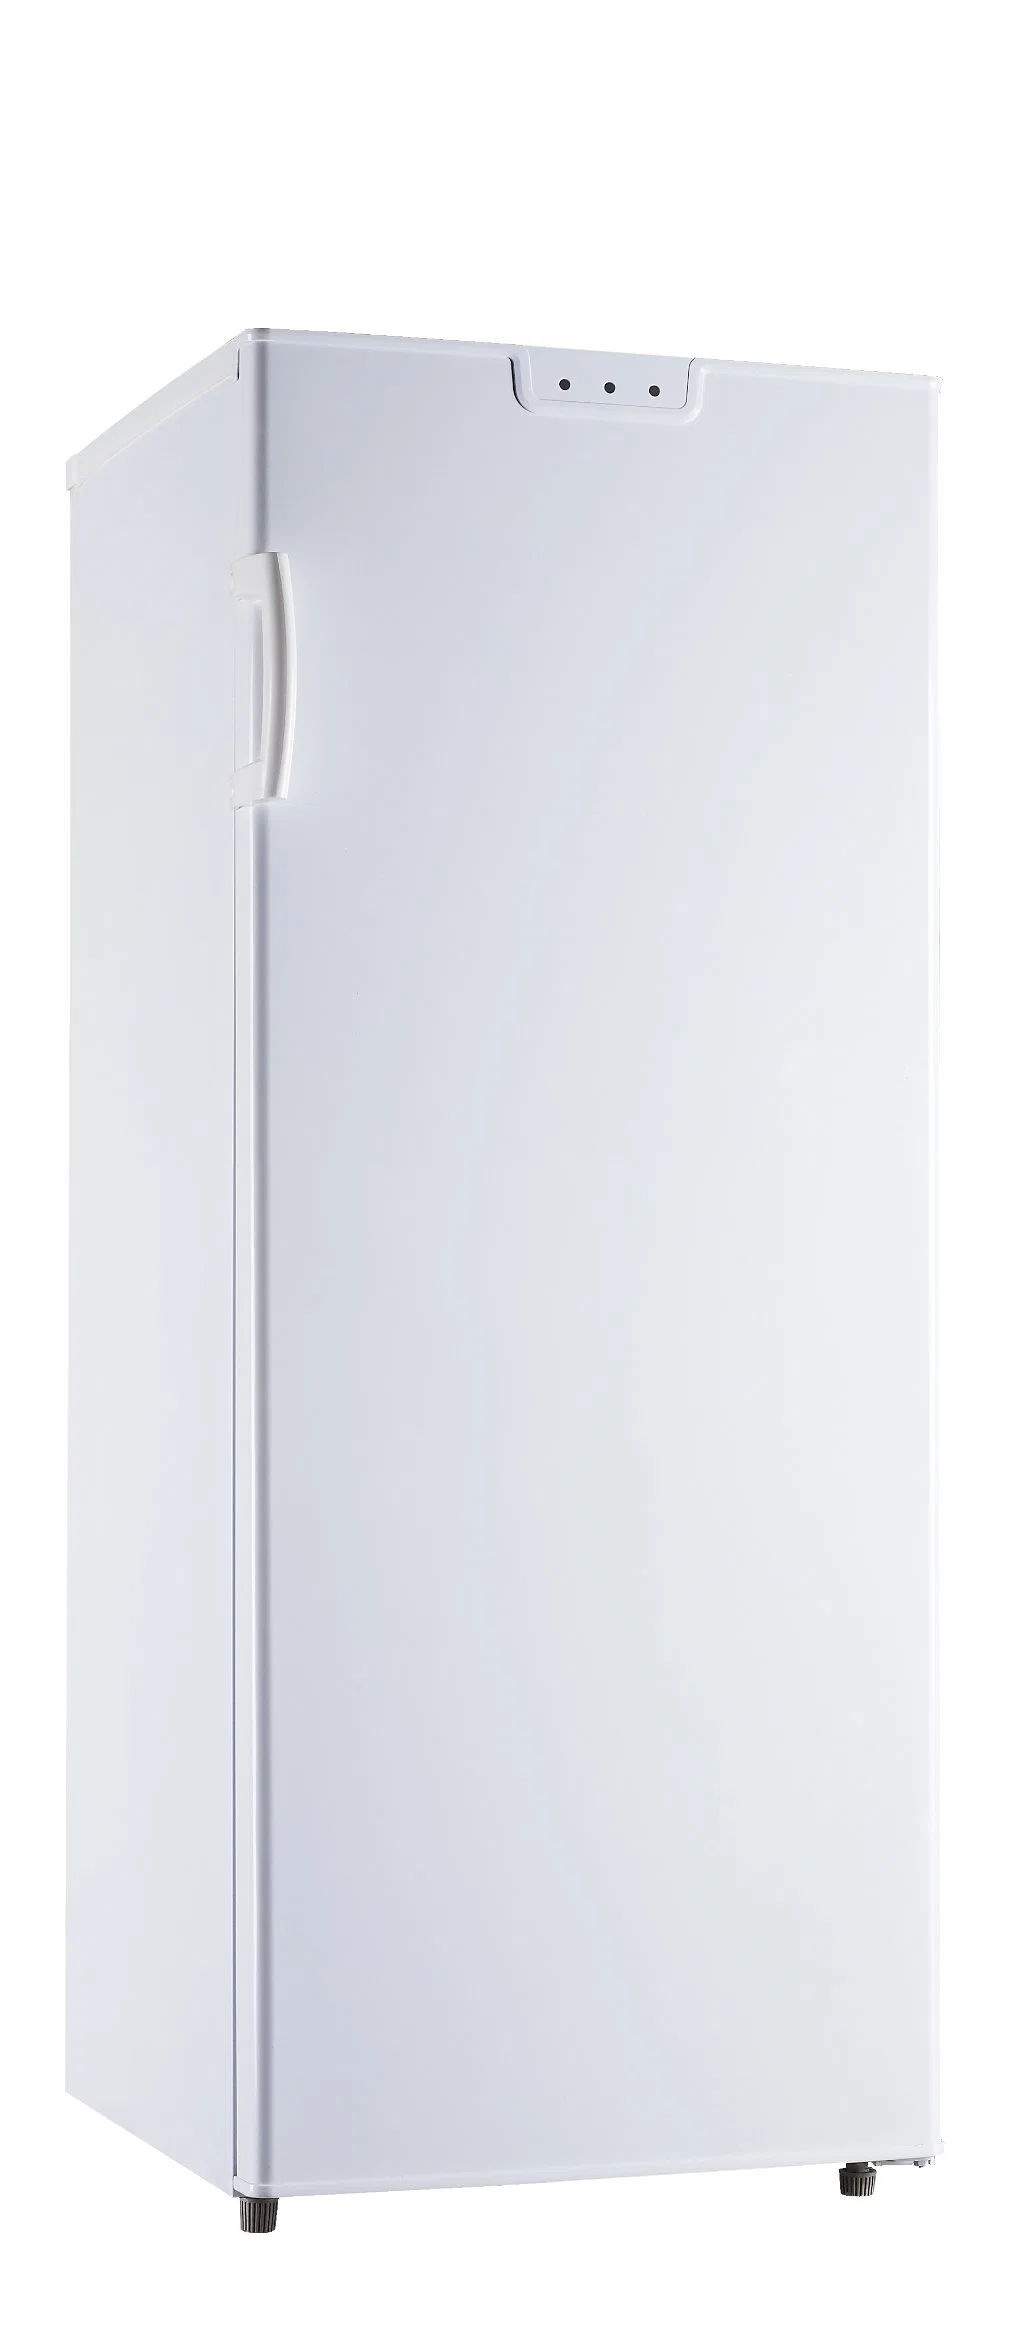 La Chine Factory Hot Sale réfrigérateur double porte réfrigérateur